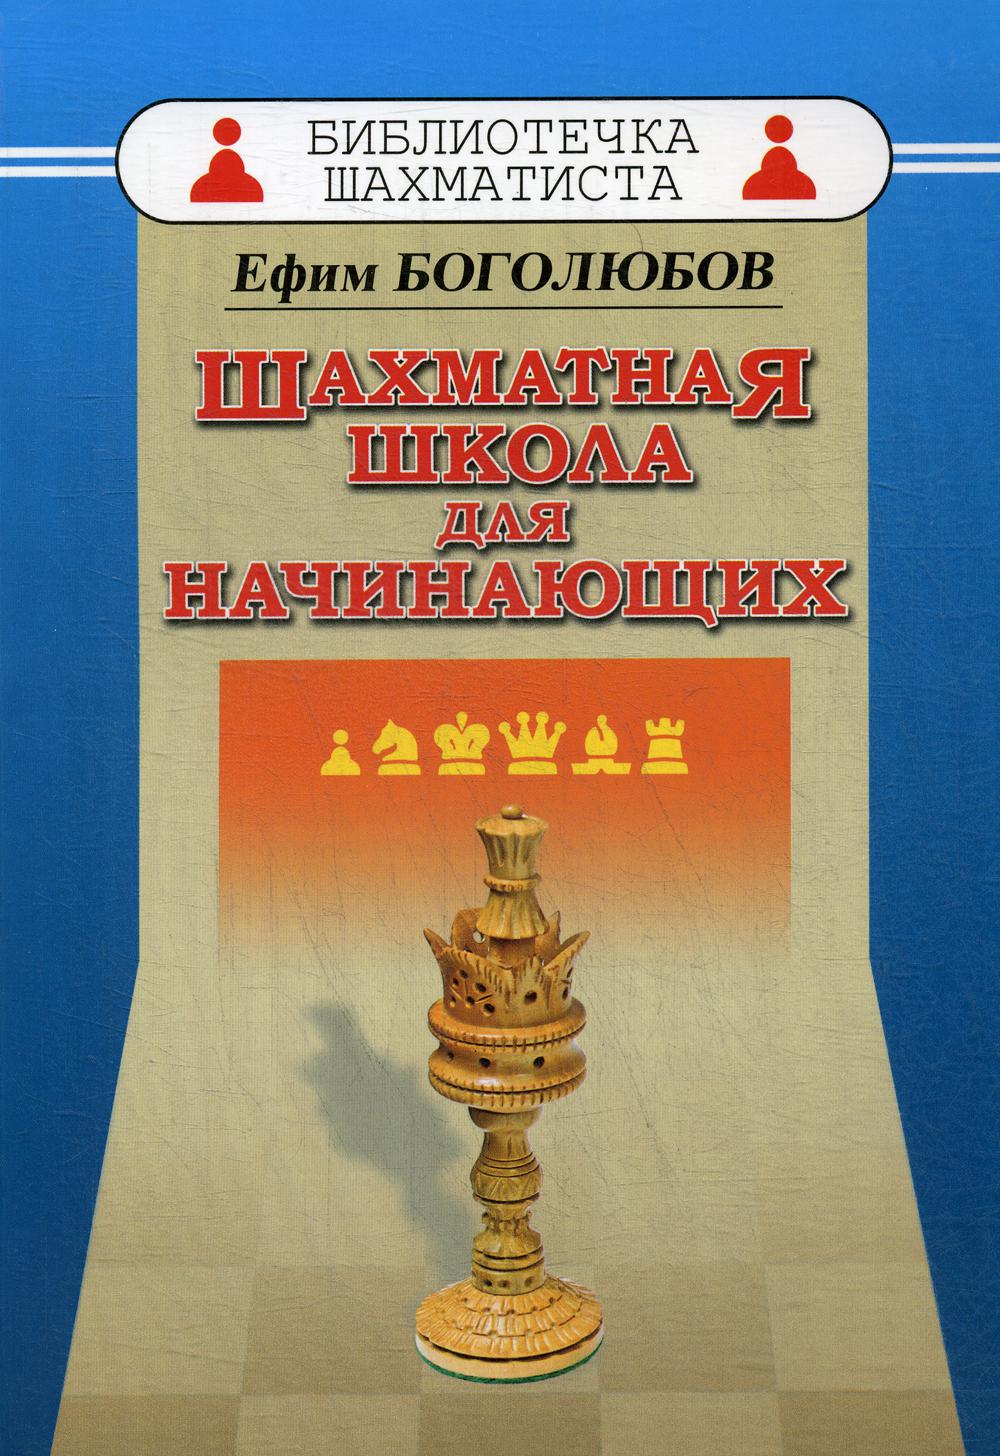 фото Книга шахматная школа для начинающих russian chess house